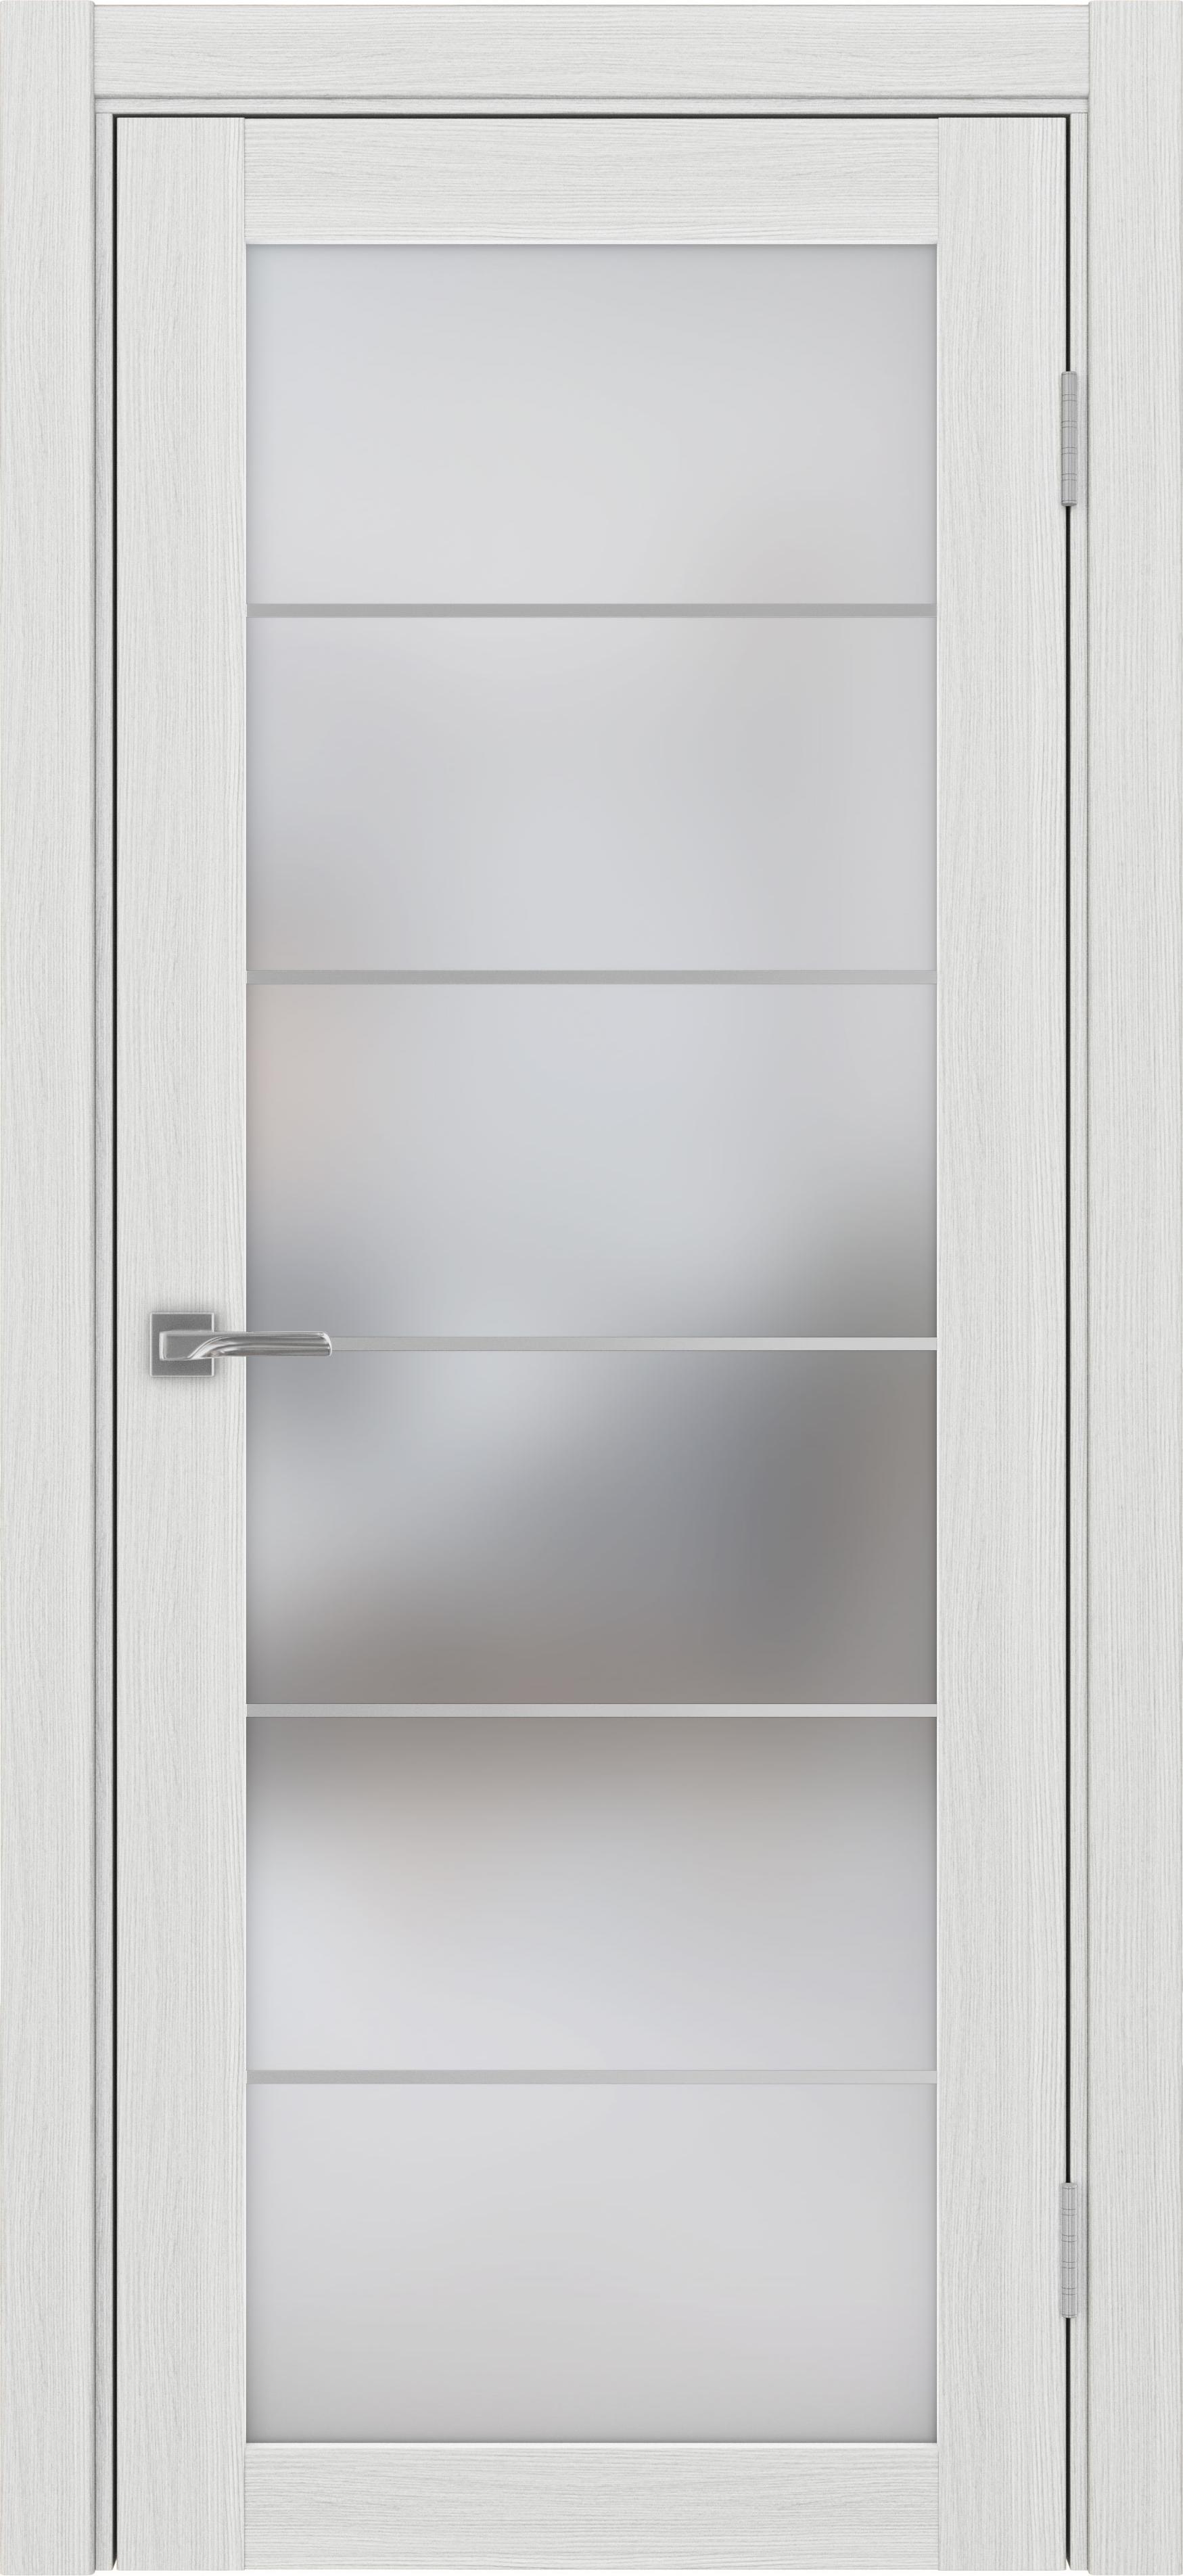 Межкомнатная дверь «Турин 501.2 АСС Ясень серебристый» стекло сатин с алюминиевыми молдингами